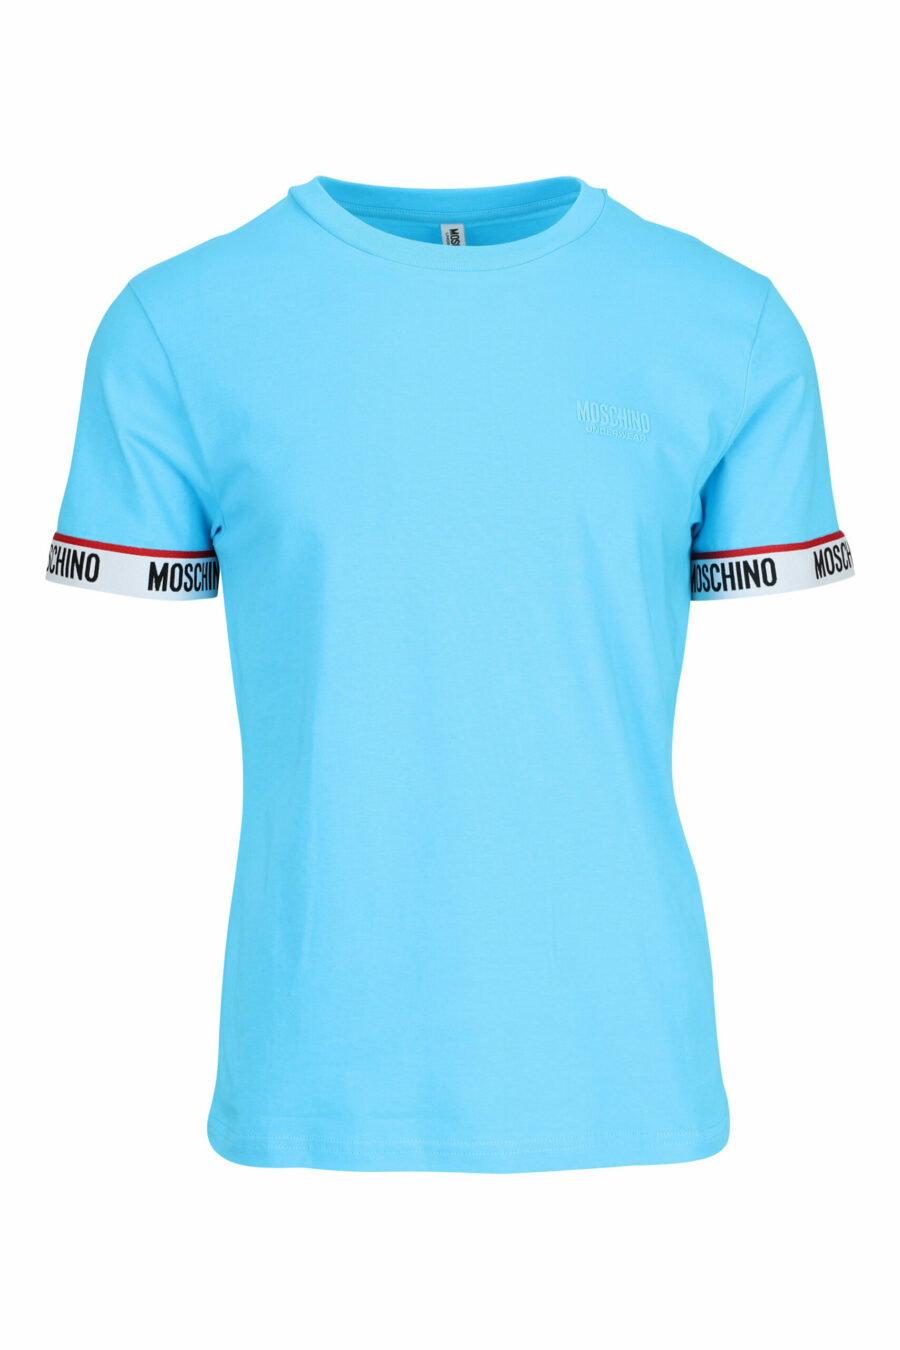 Camiseta azul claro con logo blanco en mangas - 667113604626 scaled